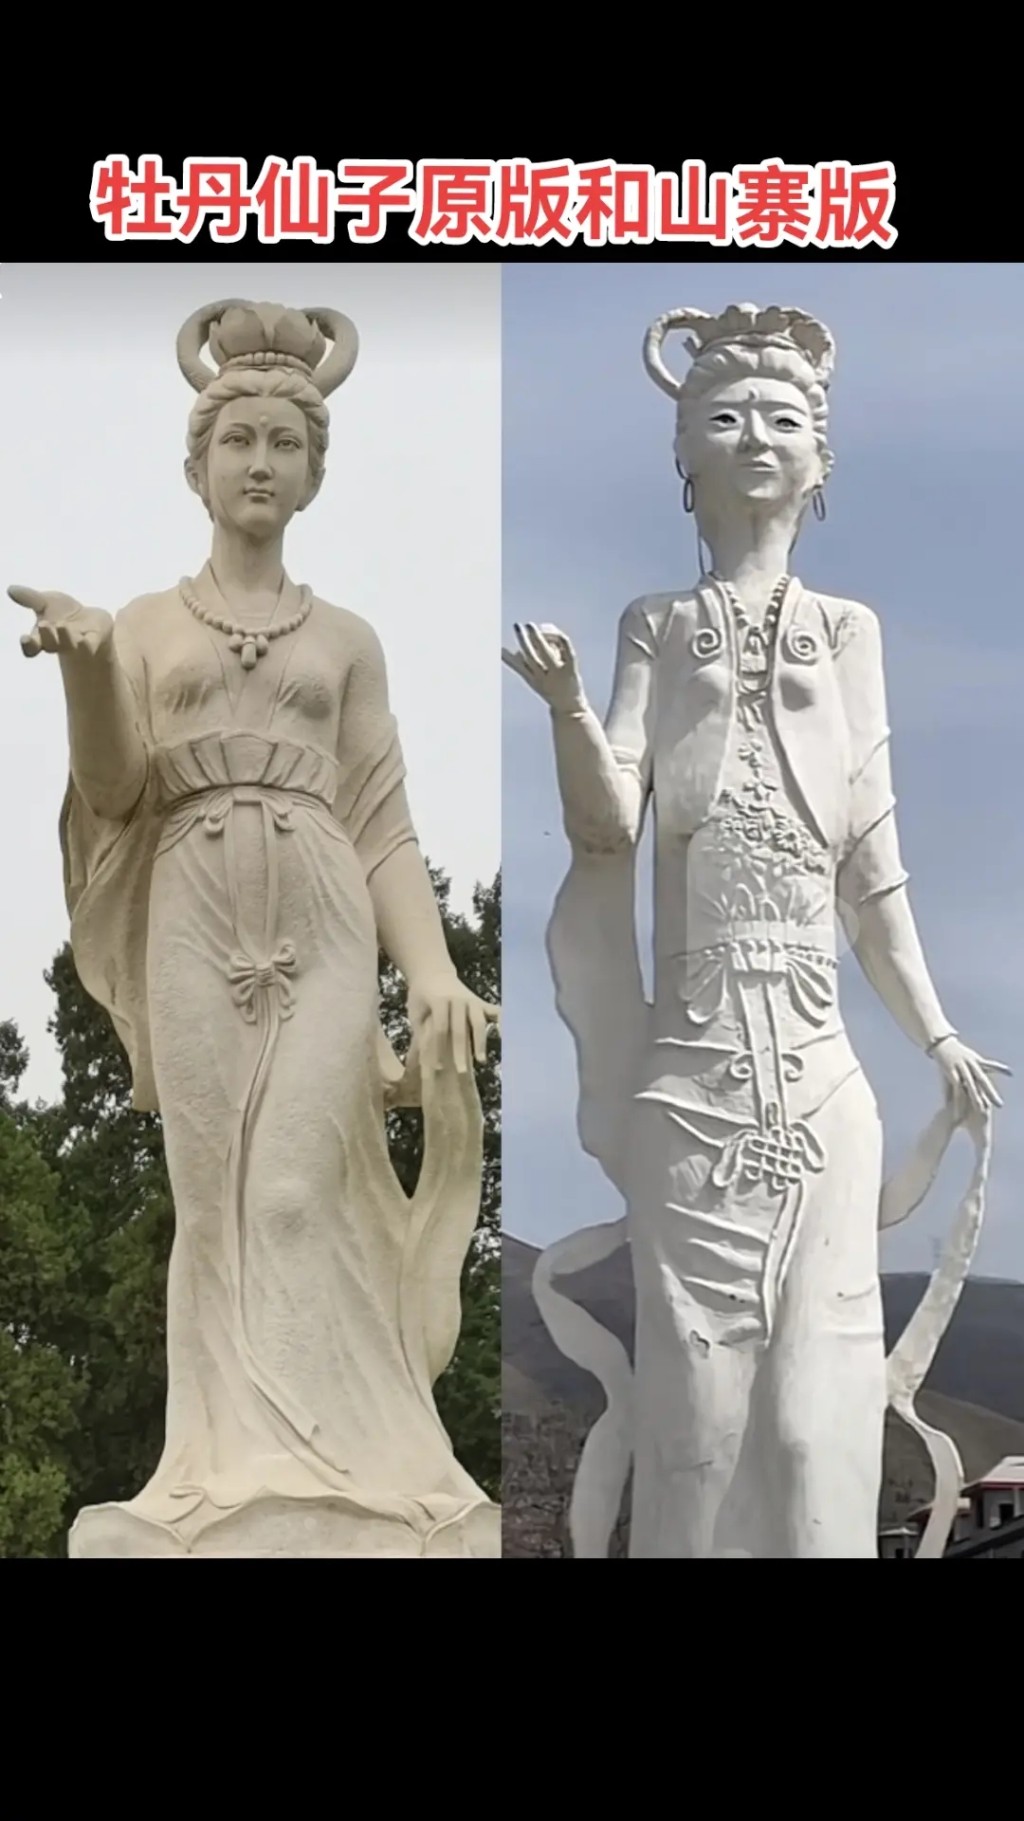 「牡丹仙子」原像和山寨版對比。